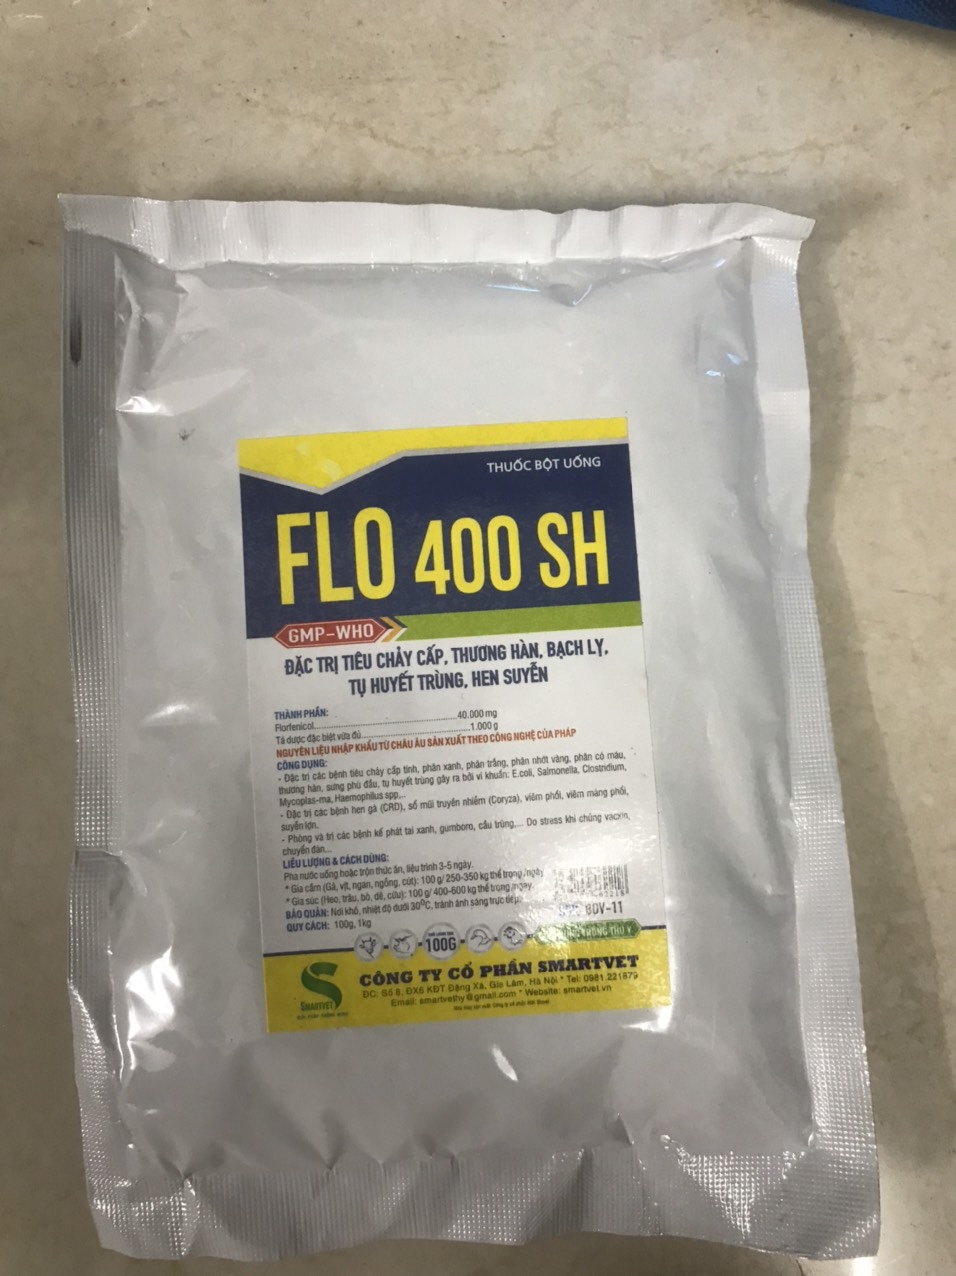 Flo400 SH/  Flo 400 SH (100g) dùng cho chó, mèo, gia súc, gia cầm